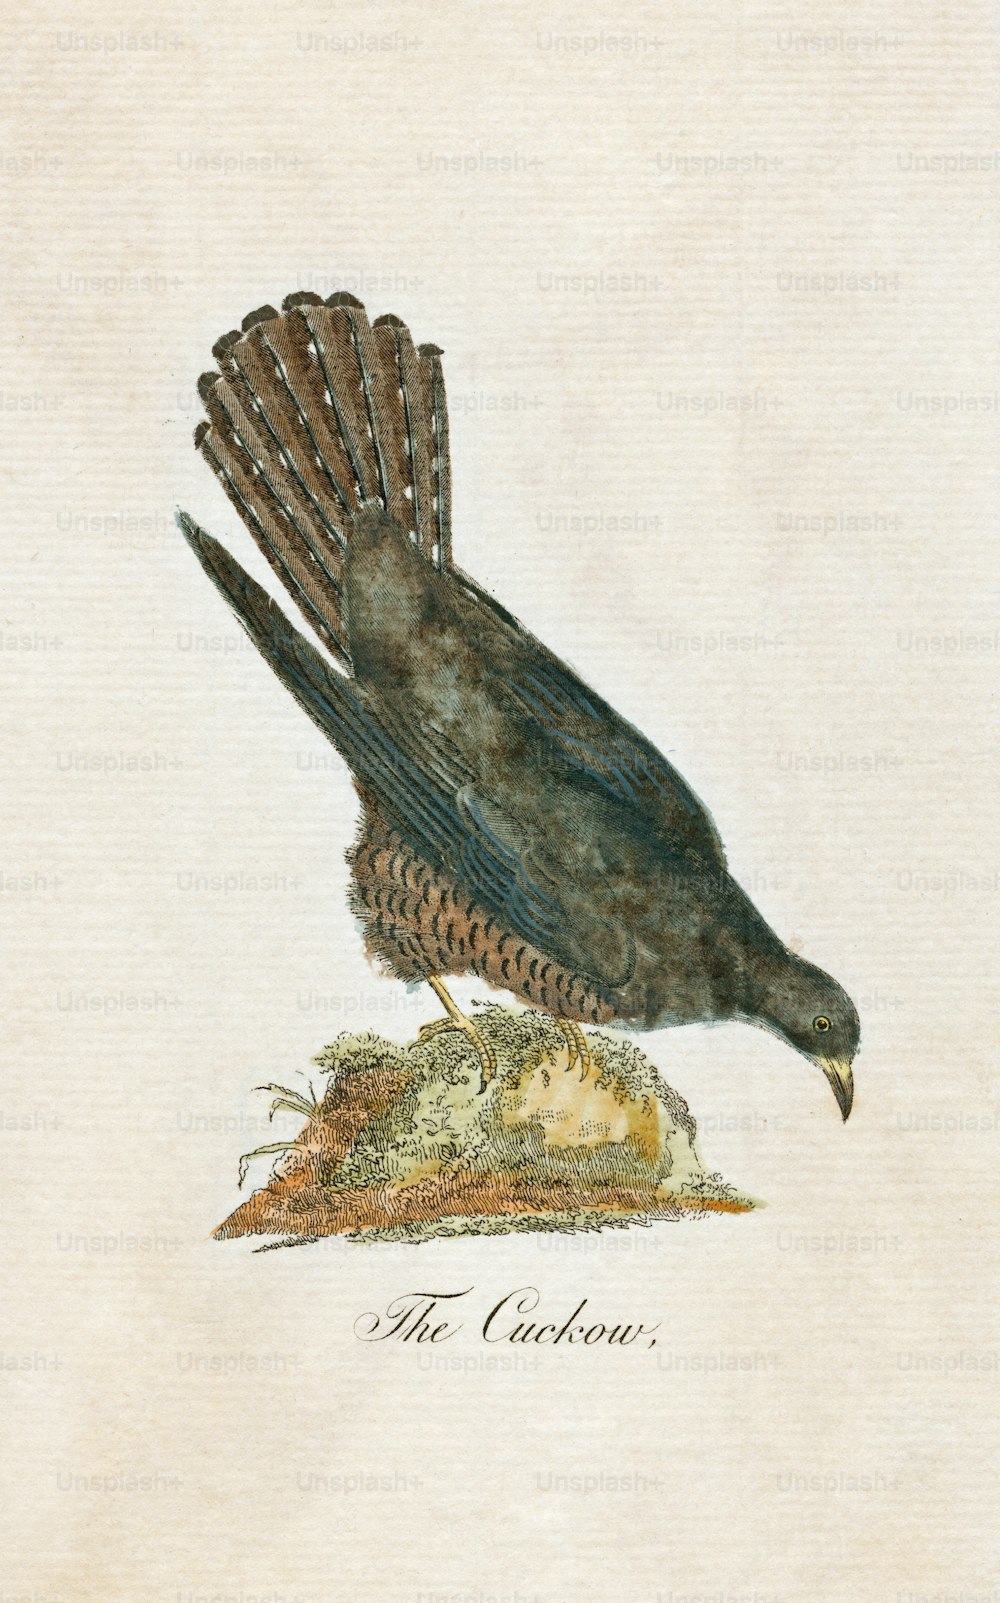 Une illustration de plaque de « Le Cuckow », ou coucou, vers 1850. (Photo de Hulton Archive/Getty Images)